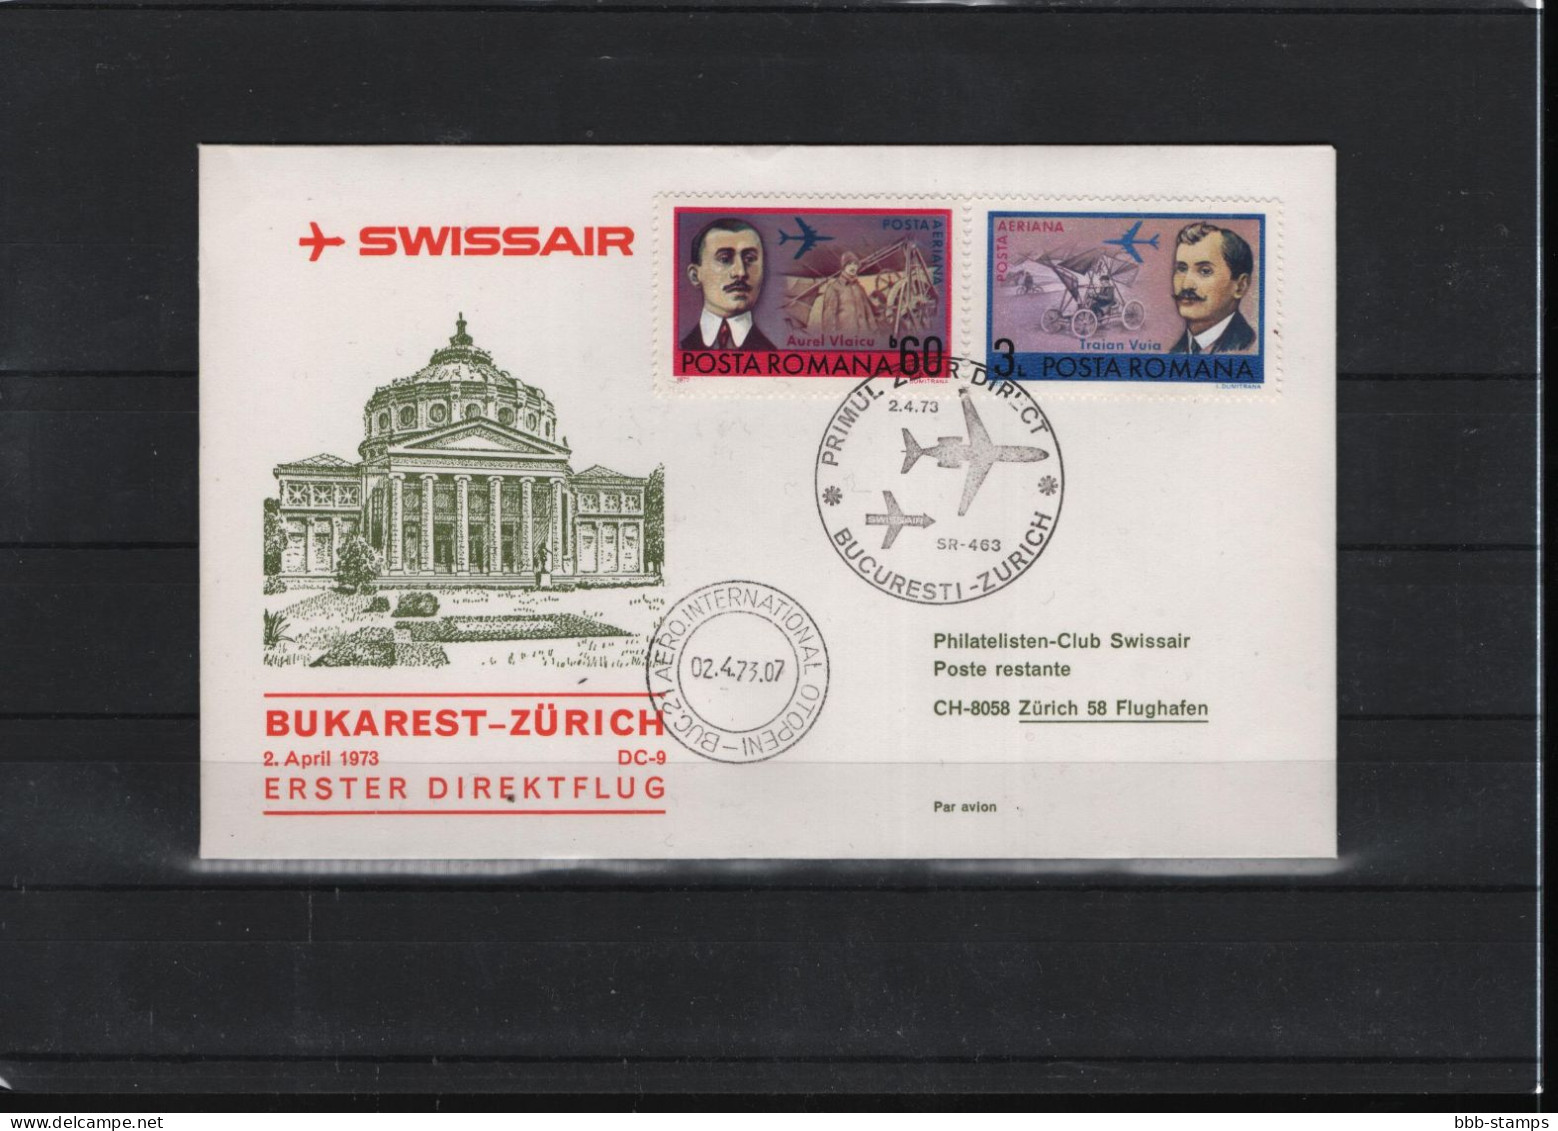 Schweiz Luftpost FFC Swissair  2.4.1973 Bukarest - Zürich - Primeros Vuelos